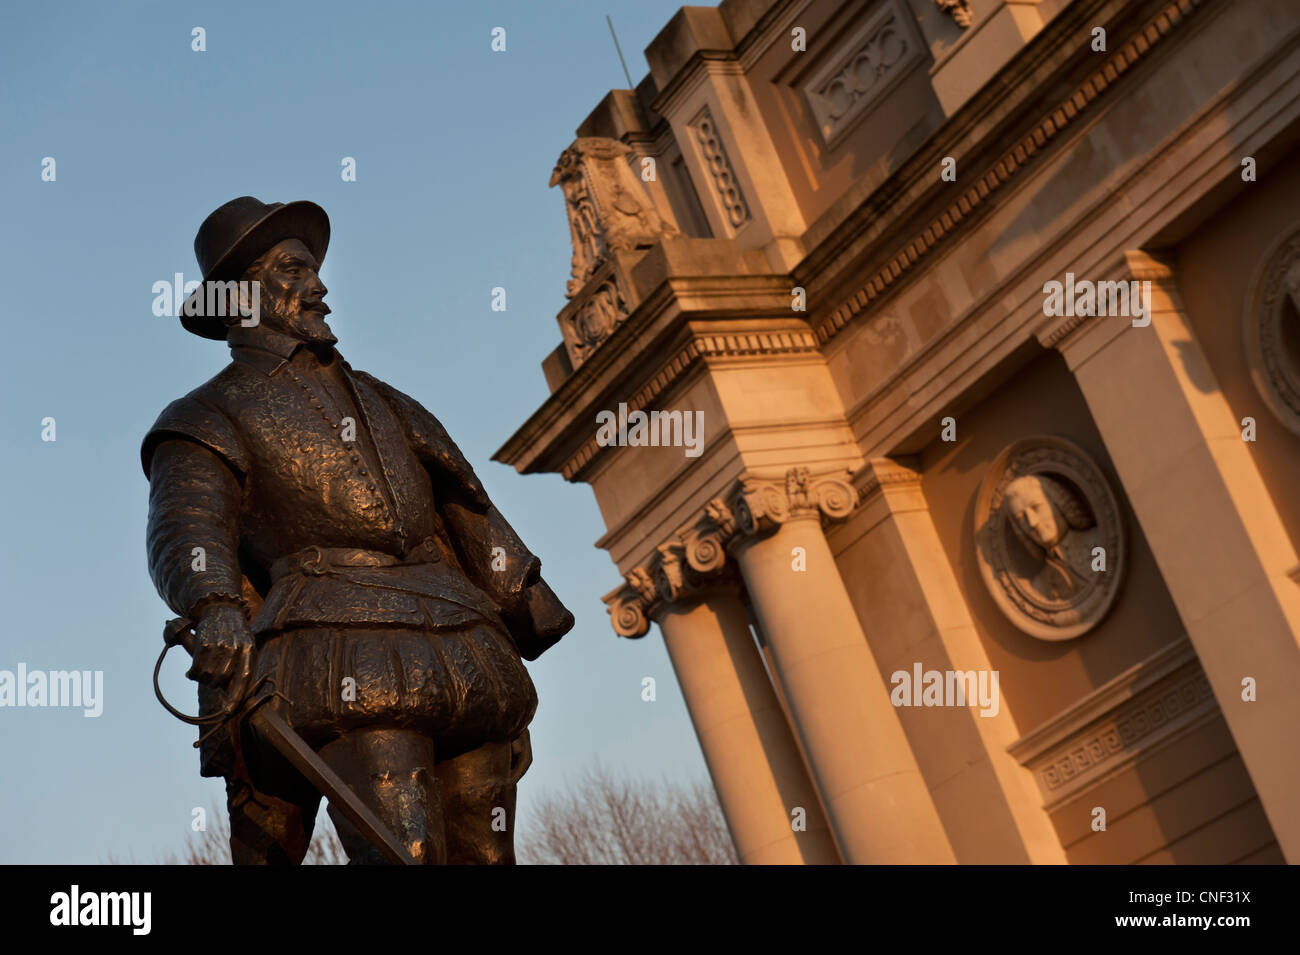 La statue de Sir Walter Raleigh statue à l'extérieur du bâtiment de découvrir Greenwich, Londres, Royaume-Uni Banque D'Images